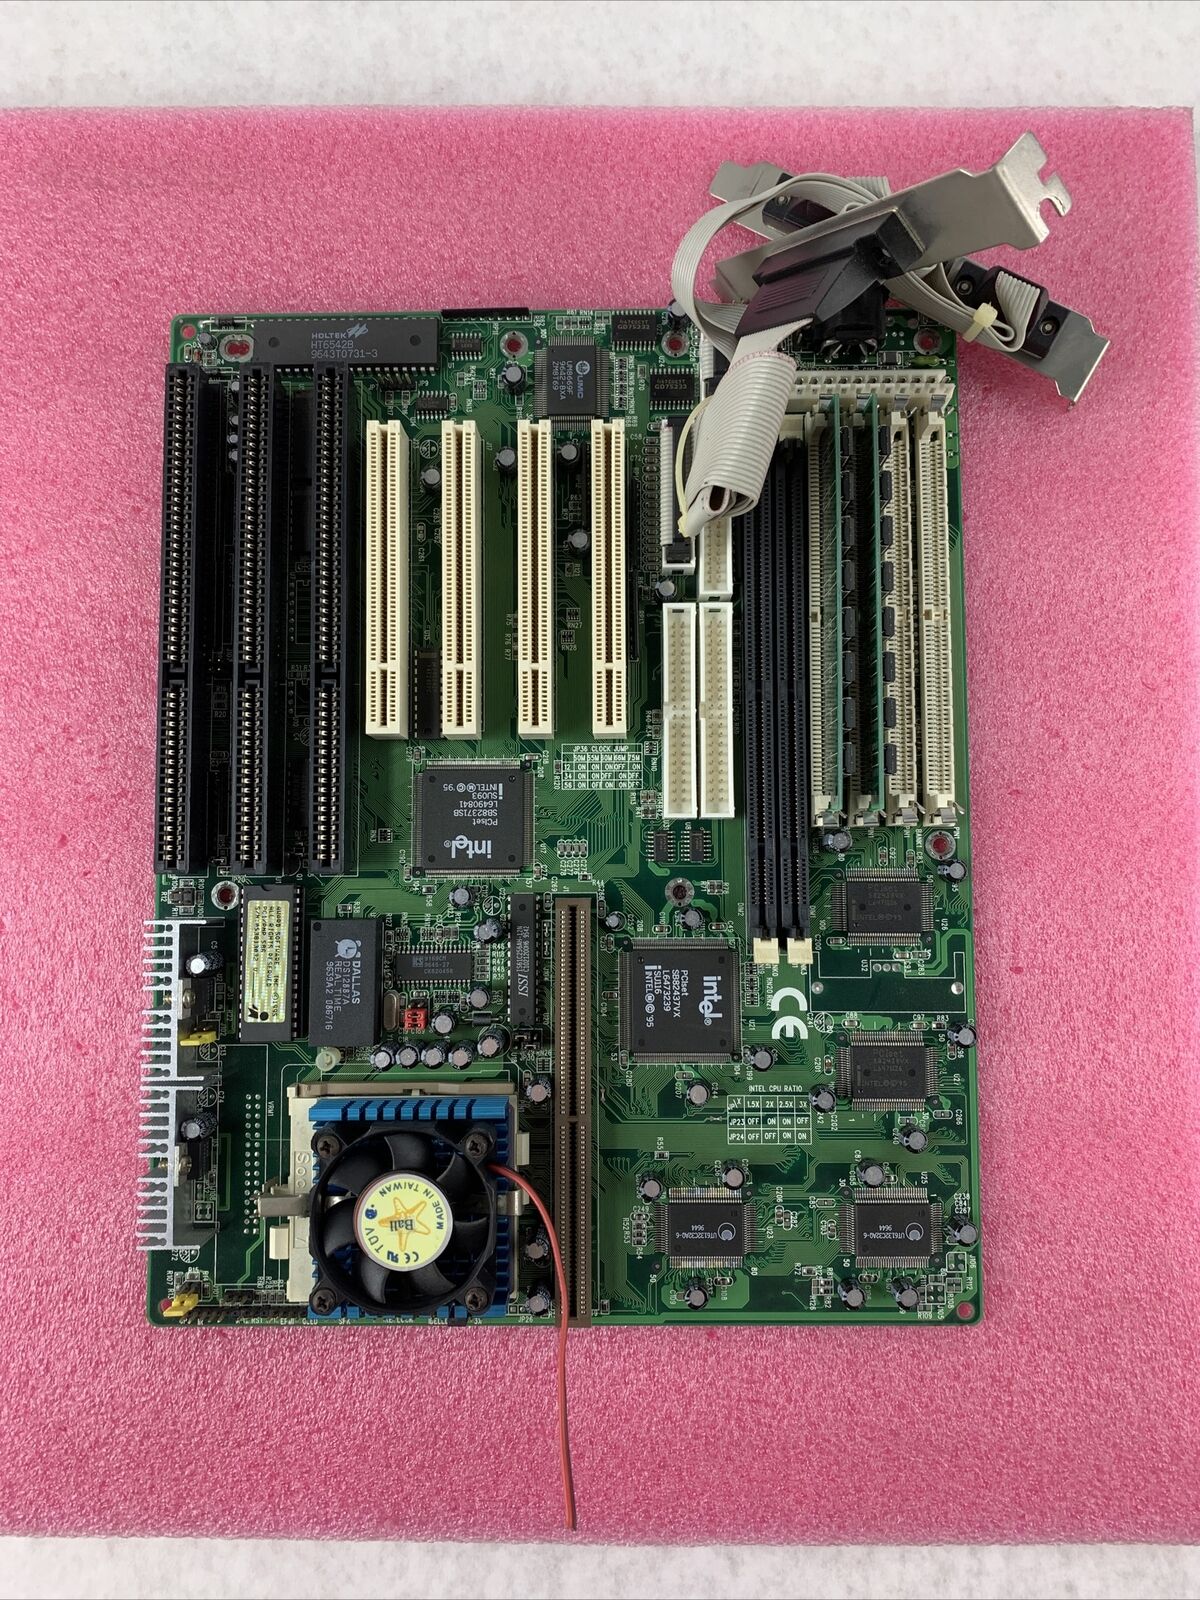 Shuttle 557 v1.32 Socket 7 Motherboard Intel Pentium 133MHz 32MB RAM Cut Fan